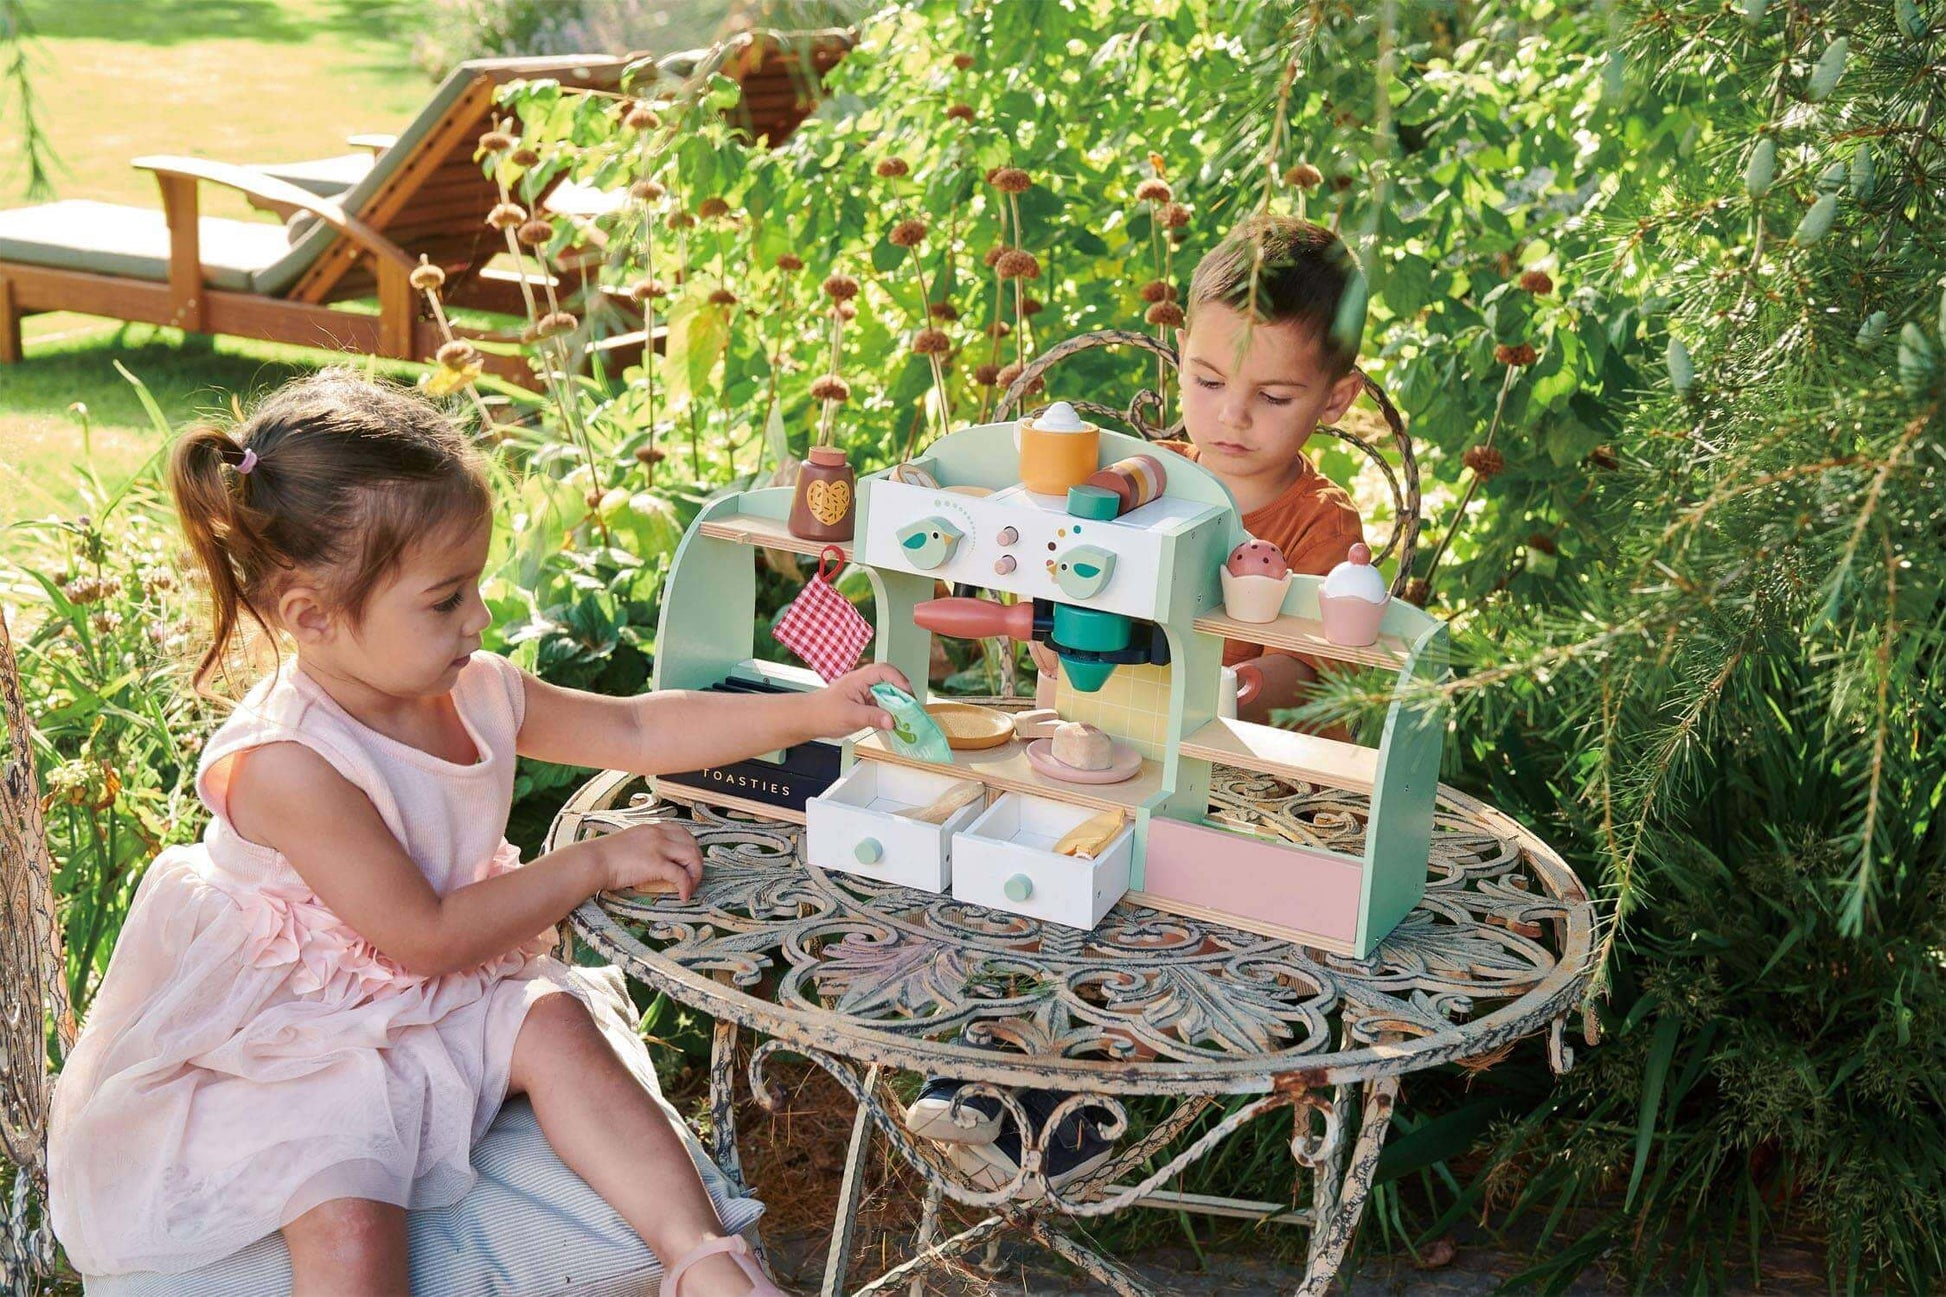 Bird's Nest Cafe Playset, Tender Leaf Toys, eco-friendly Toys, Mountain Kids Toys